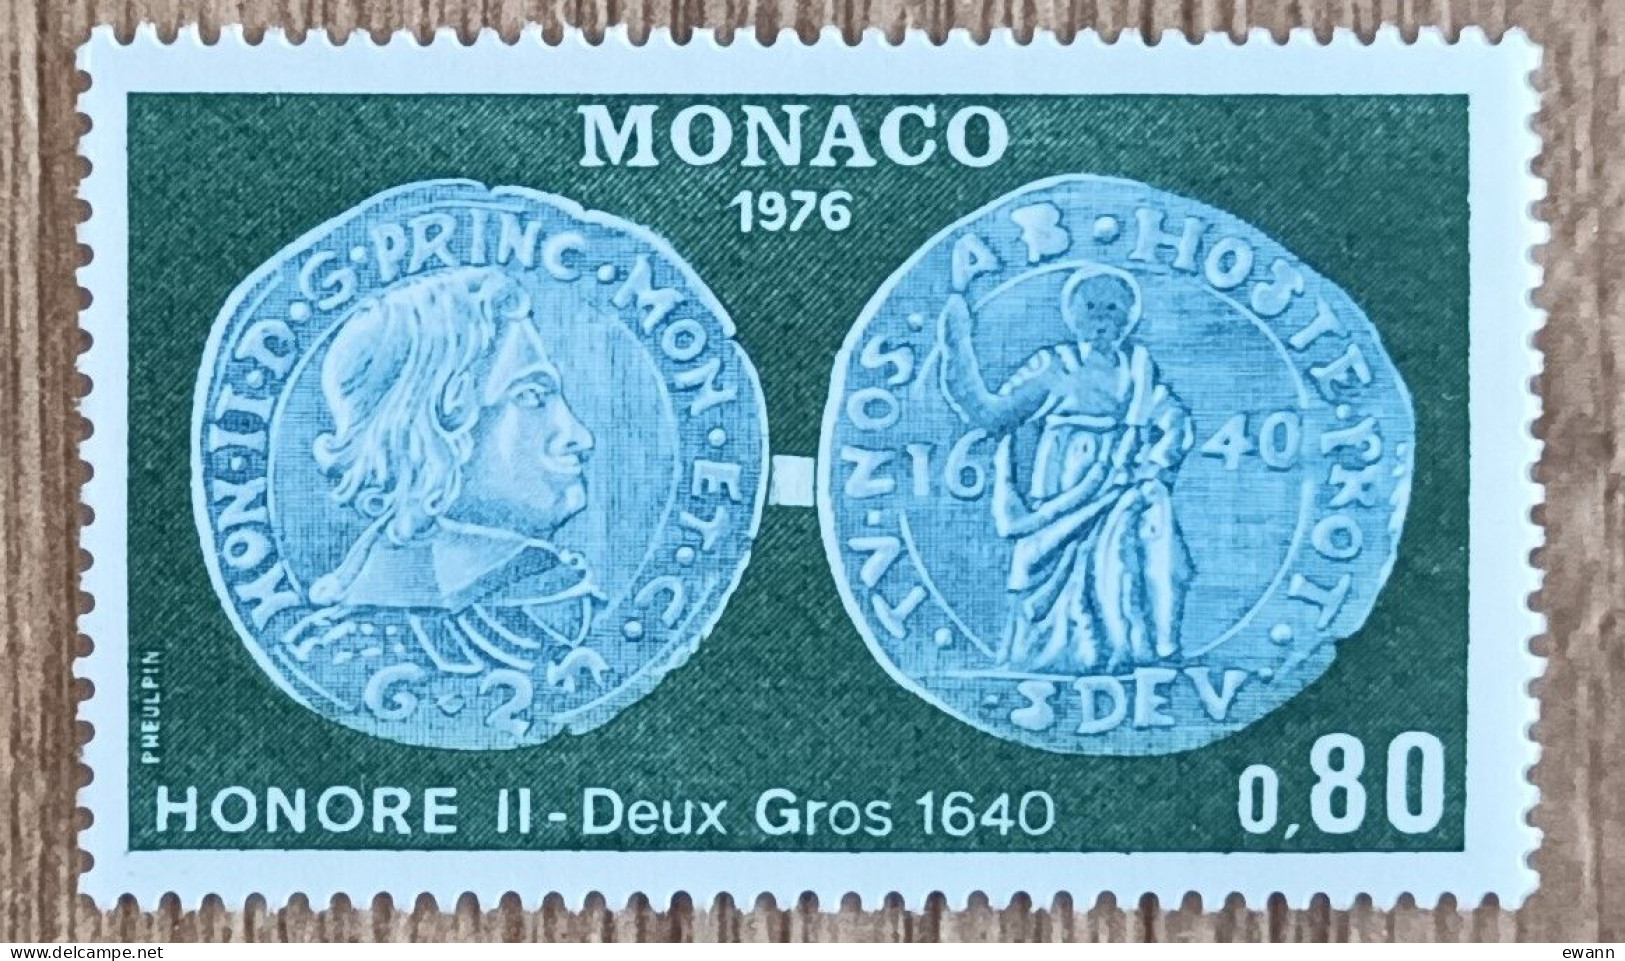 Monaco - YT N°1069 - Numismatique - 1976 - Neuf - Nuovi